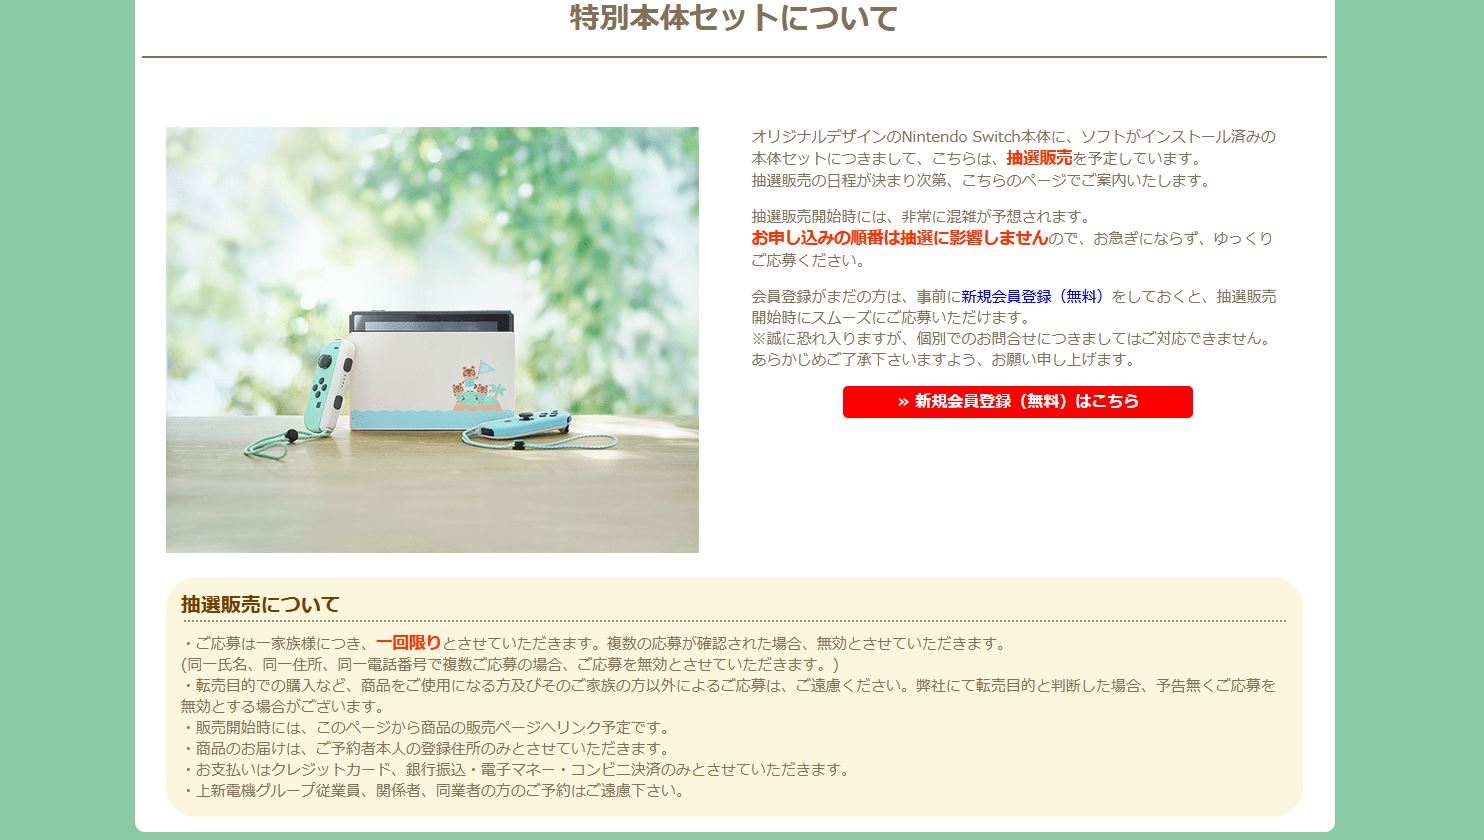 更新 Nintendo Switch あつまれ どうぶつの森セット はjoshin Webでも抽選販売に